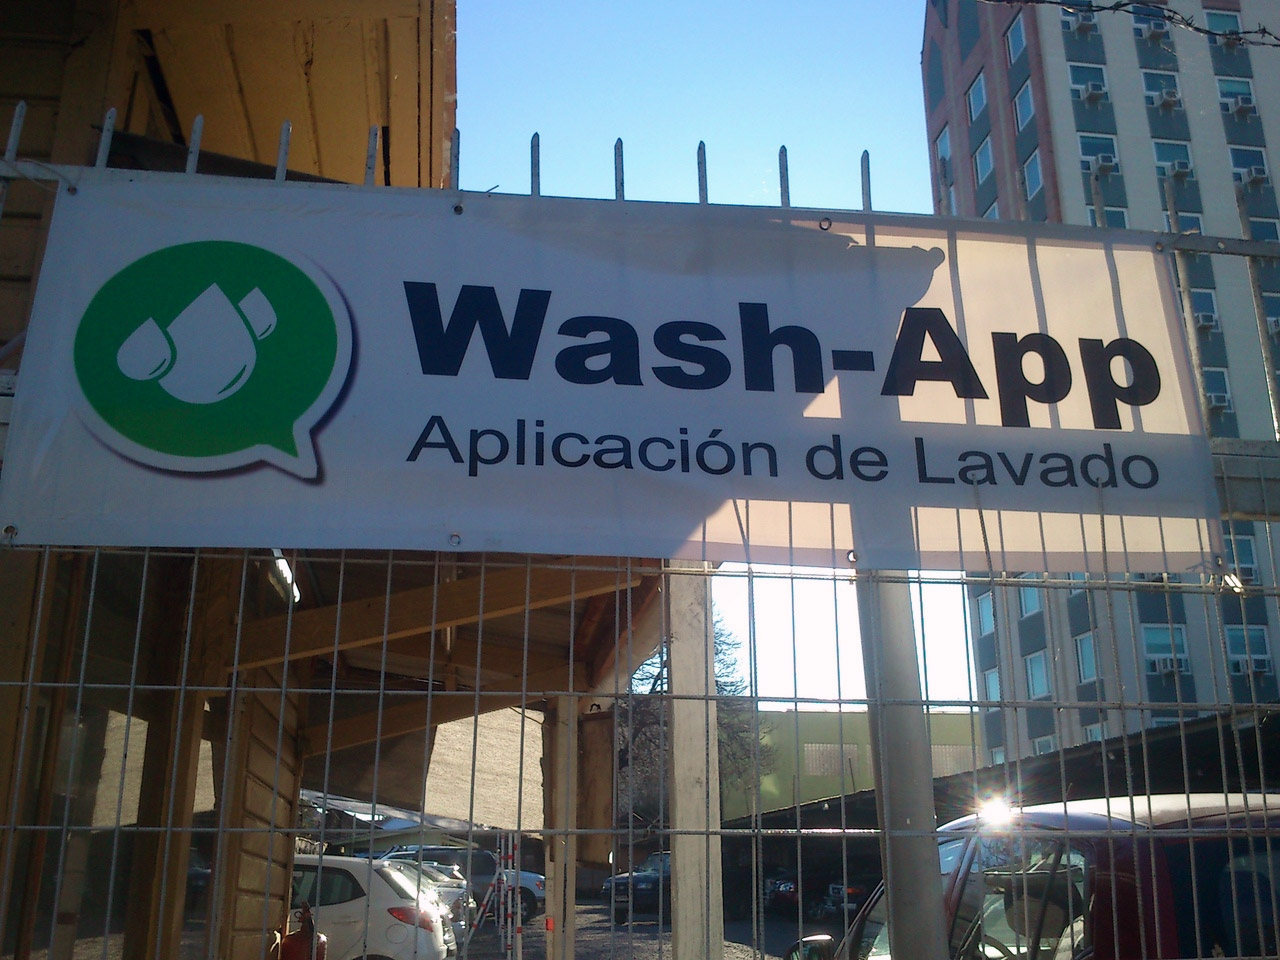 Wash-App, aplicación de lavado